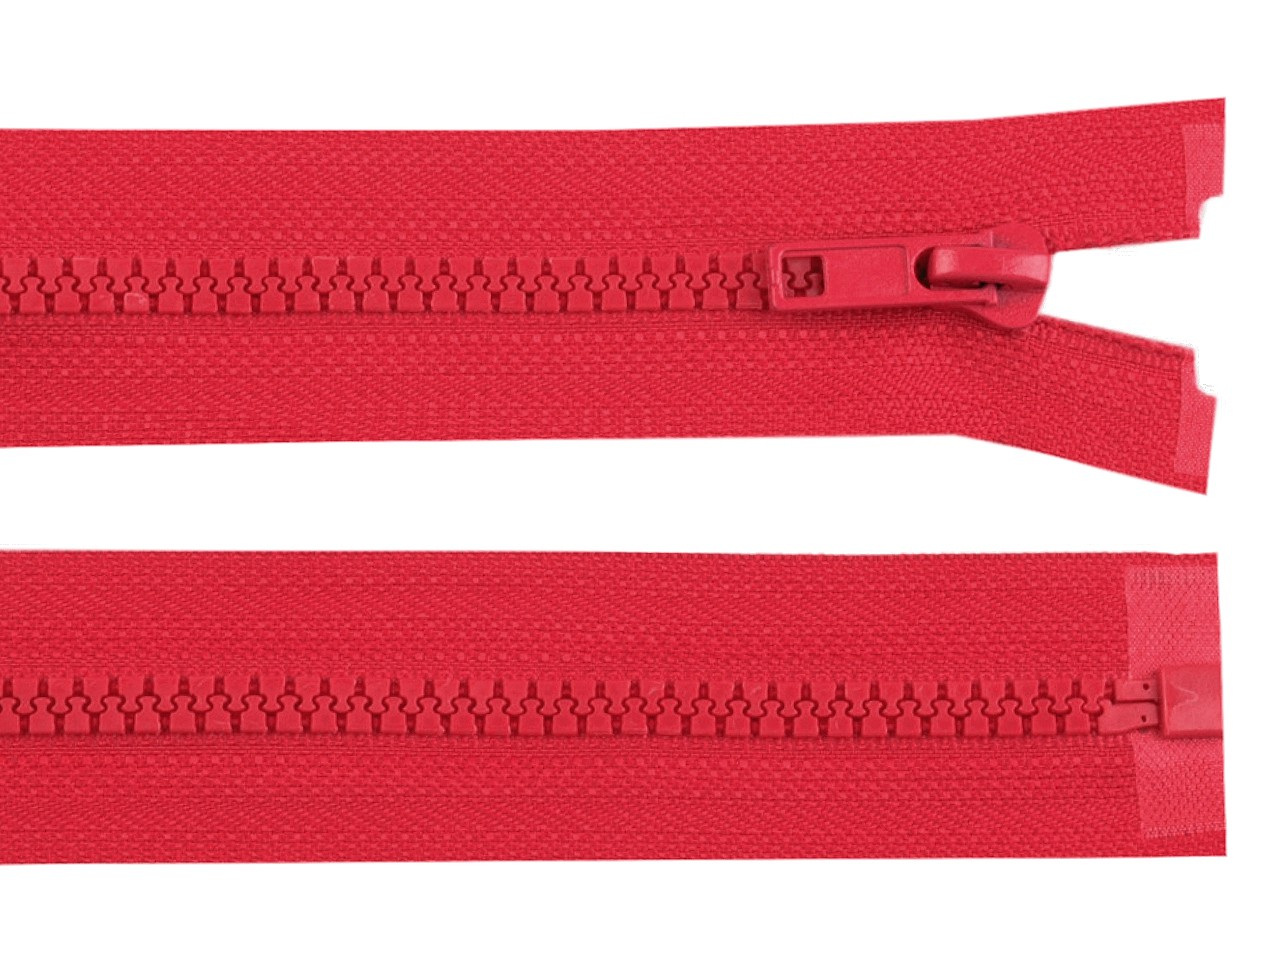 Kostěný zip No 5 délka 75 cm bundový, barva 162 Poppy Red